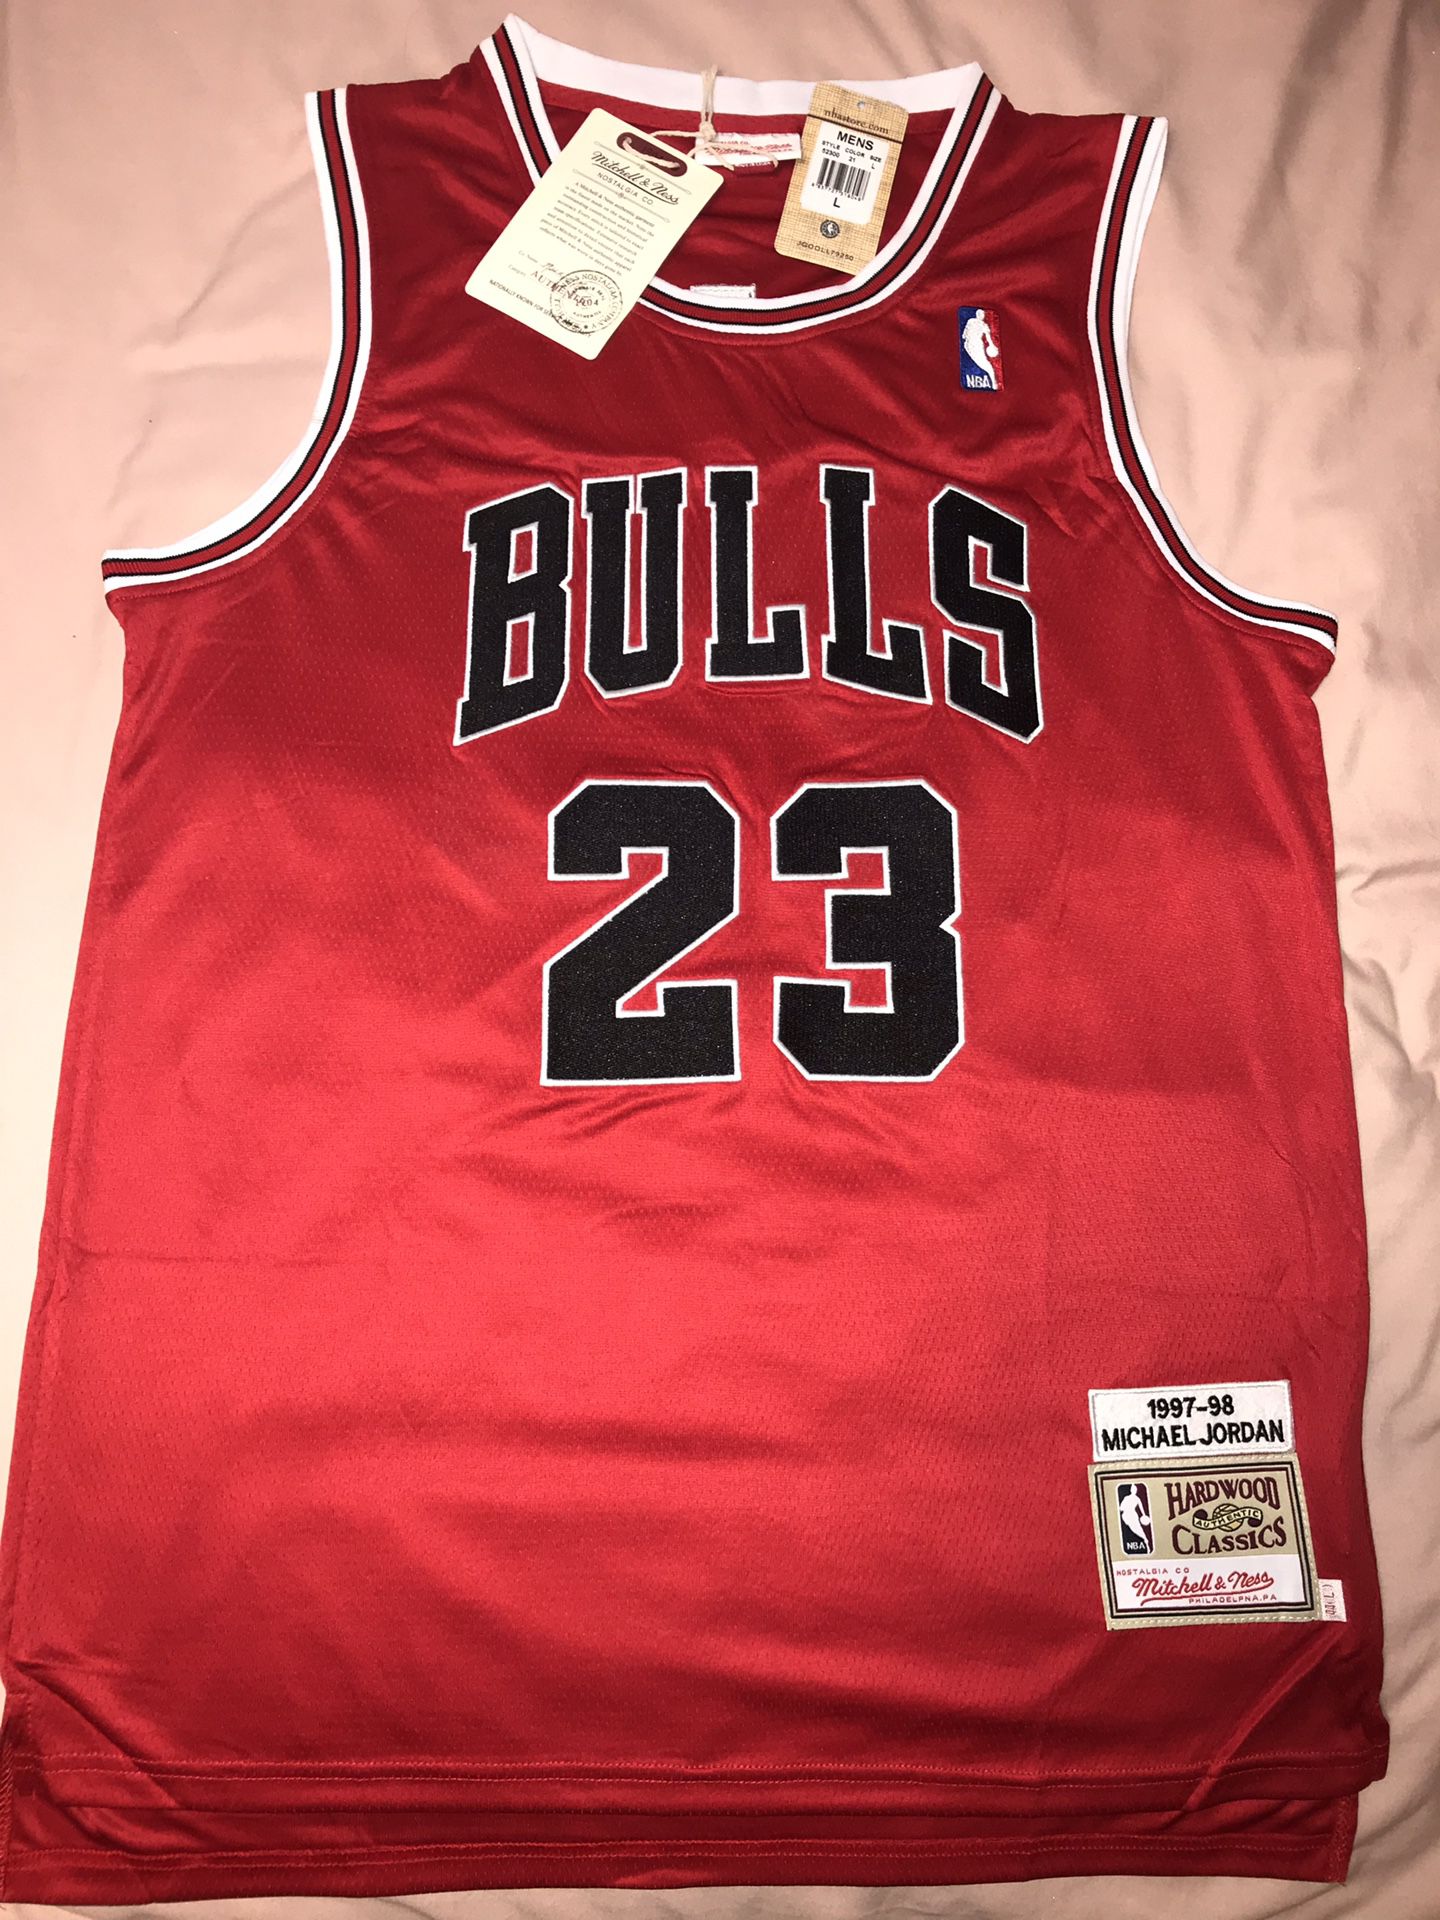 Jordan Bulls Throwback $50 Size Large and XL